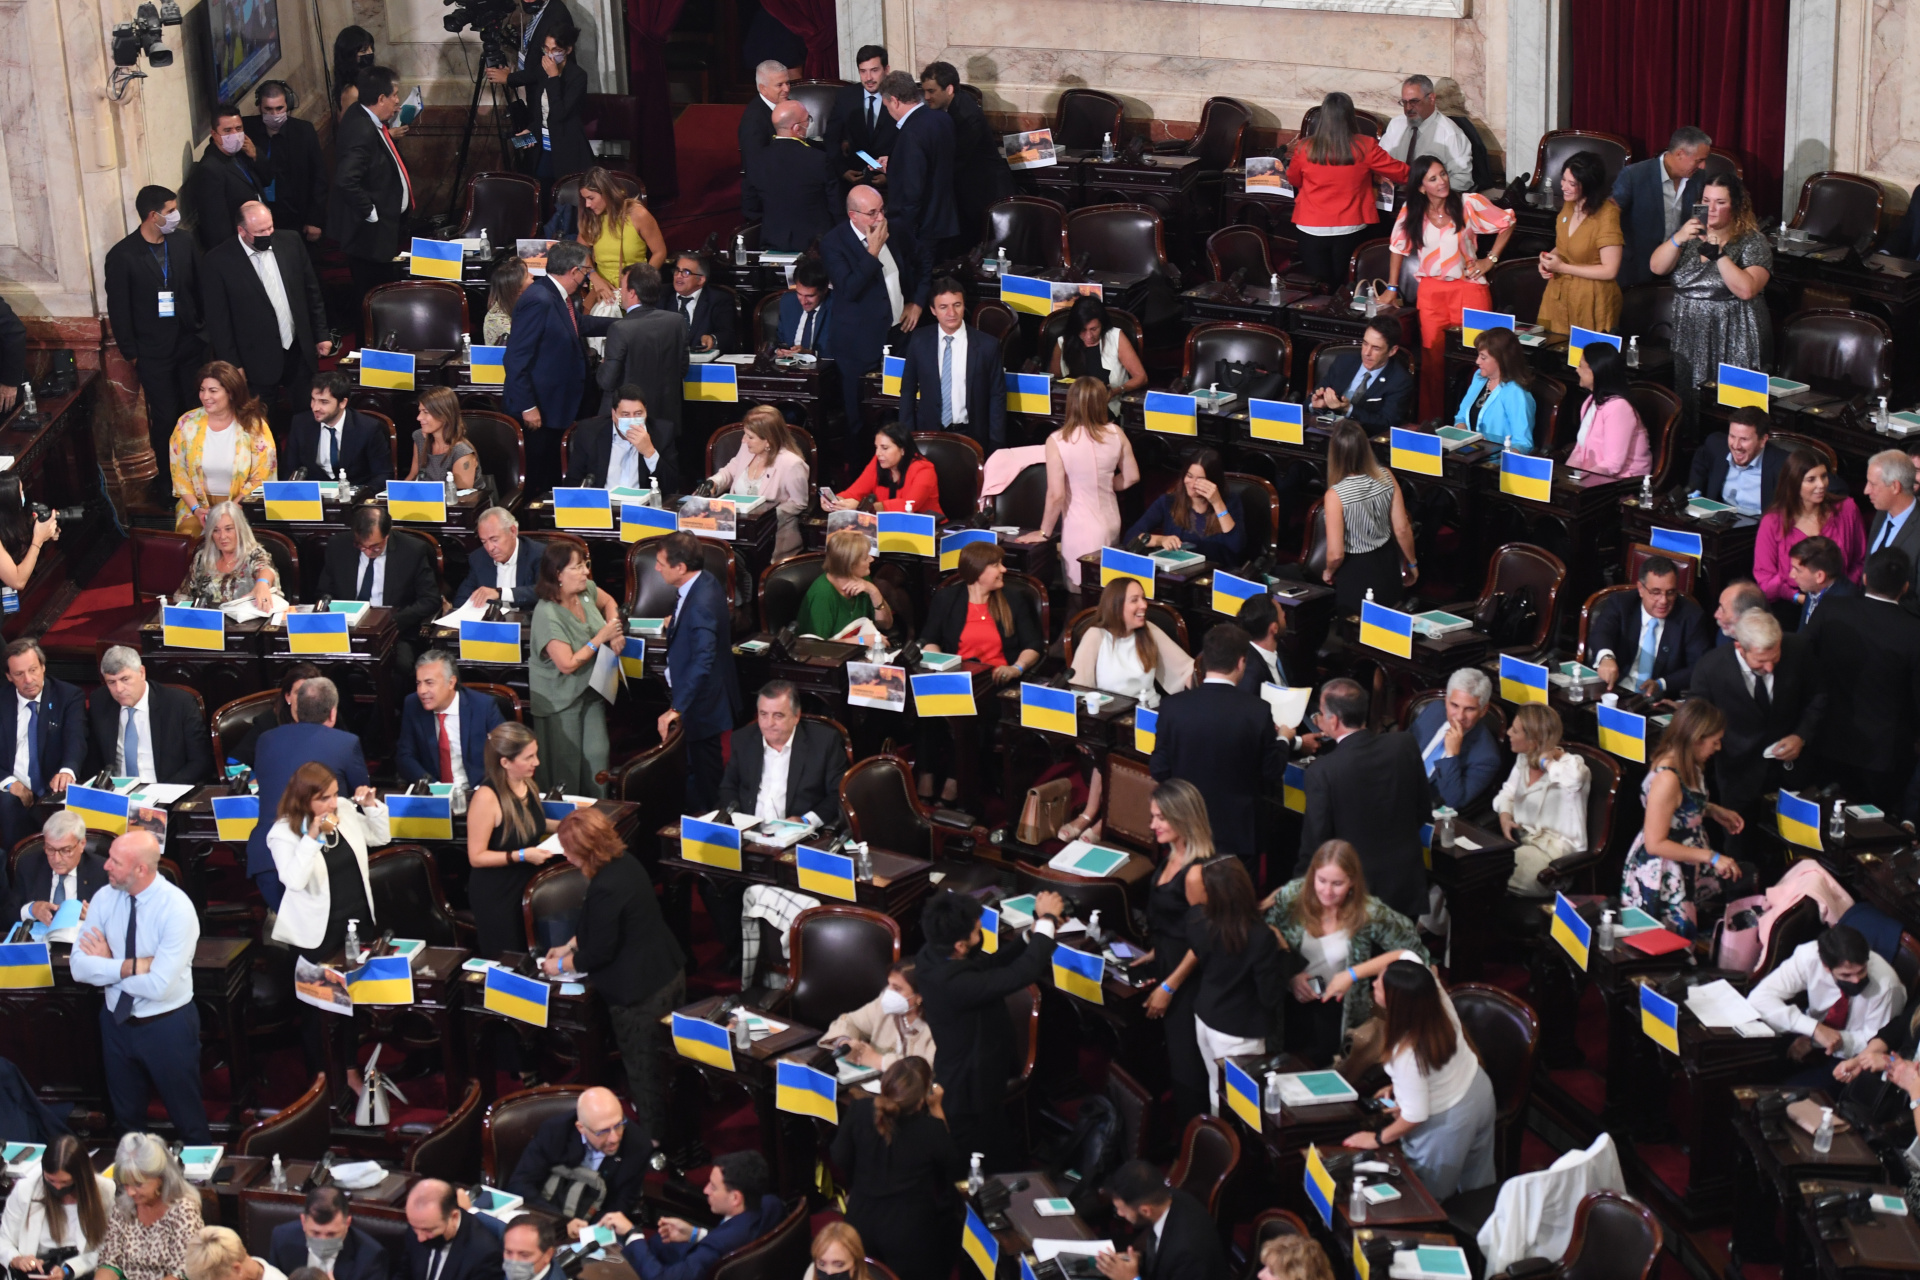 Las banderas de Ucrania no pasaron desapercibidas en el recinto